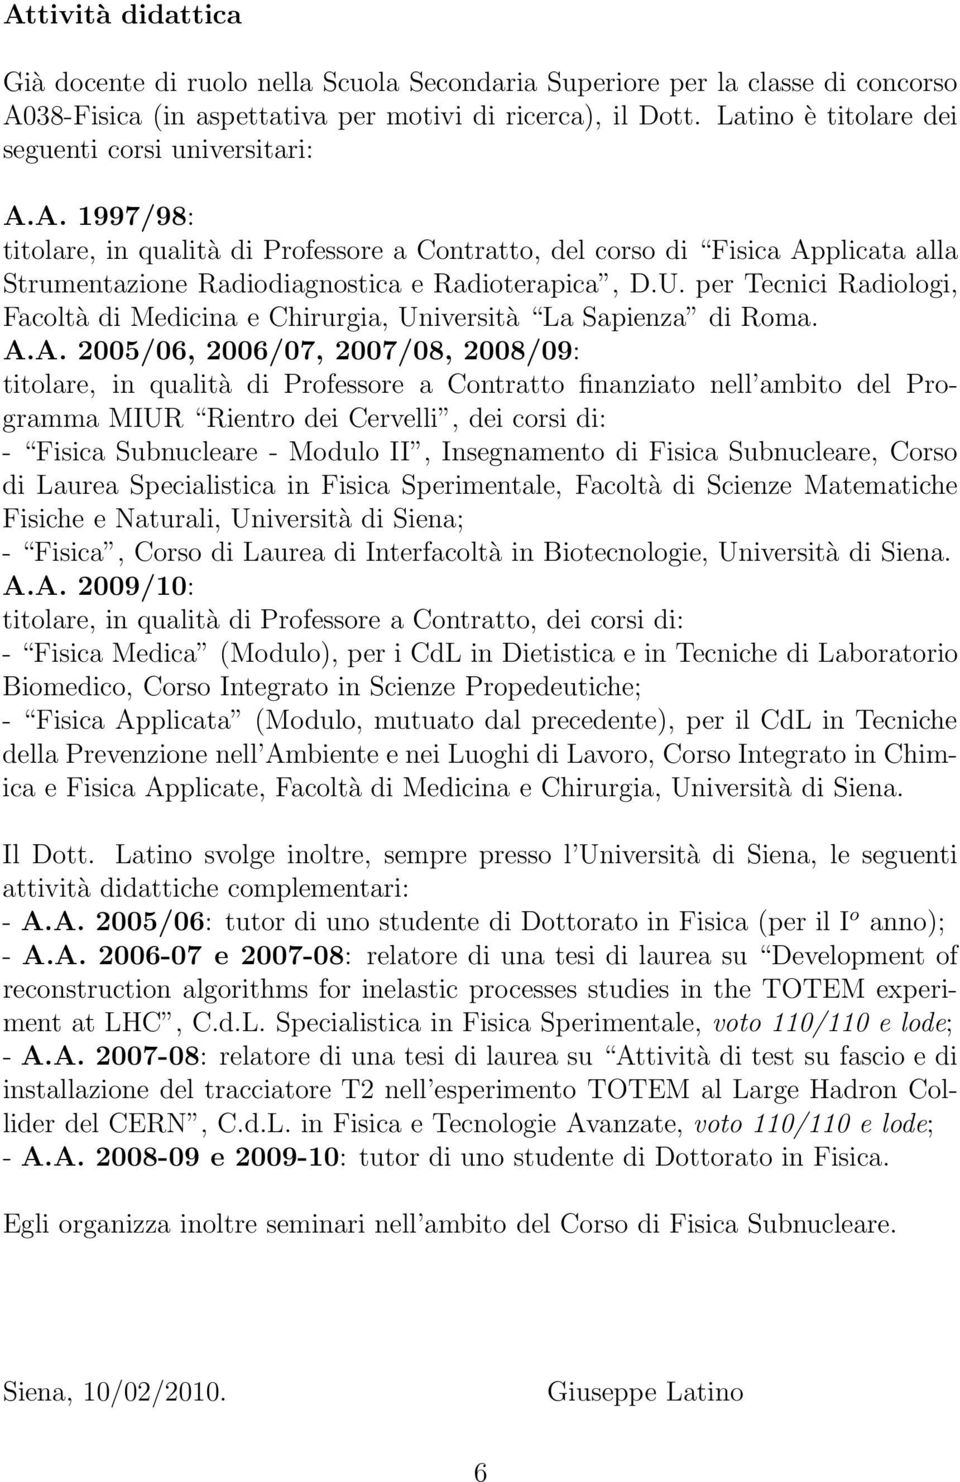 U. per Tecnici Radiologi, Facoltà di Medicina e Chirurgia, Università La Sapienza di Roma. A.